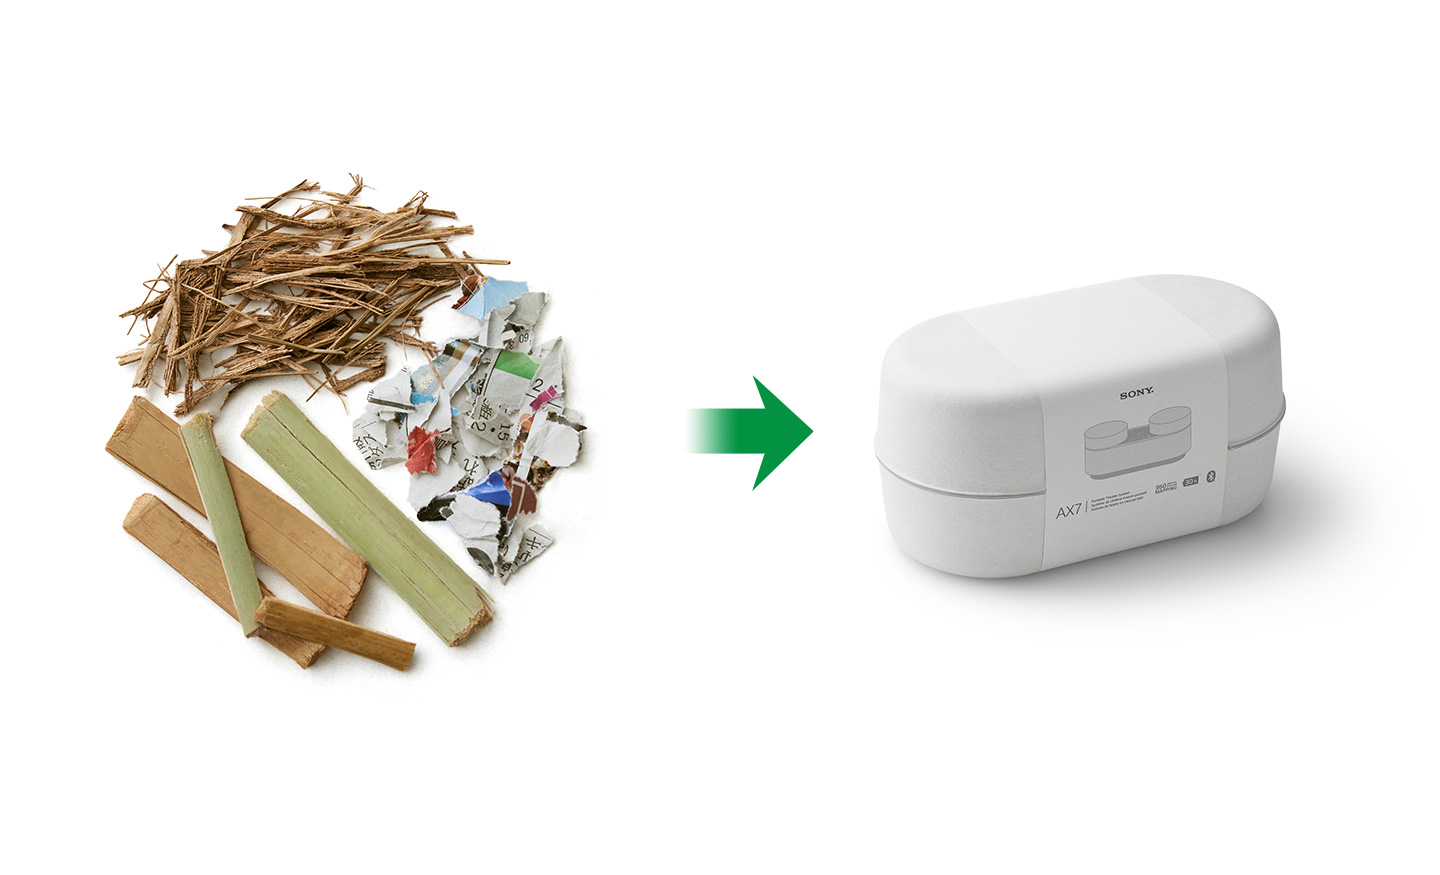 左が、竹、さとうきび繊維、市場回収リサイクルペーパーなど紙素材のイメージ、右がソニーのホームシアター製品パッケージのイメージ